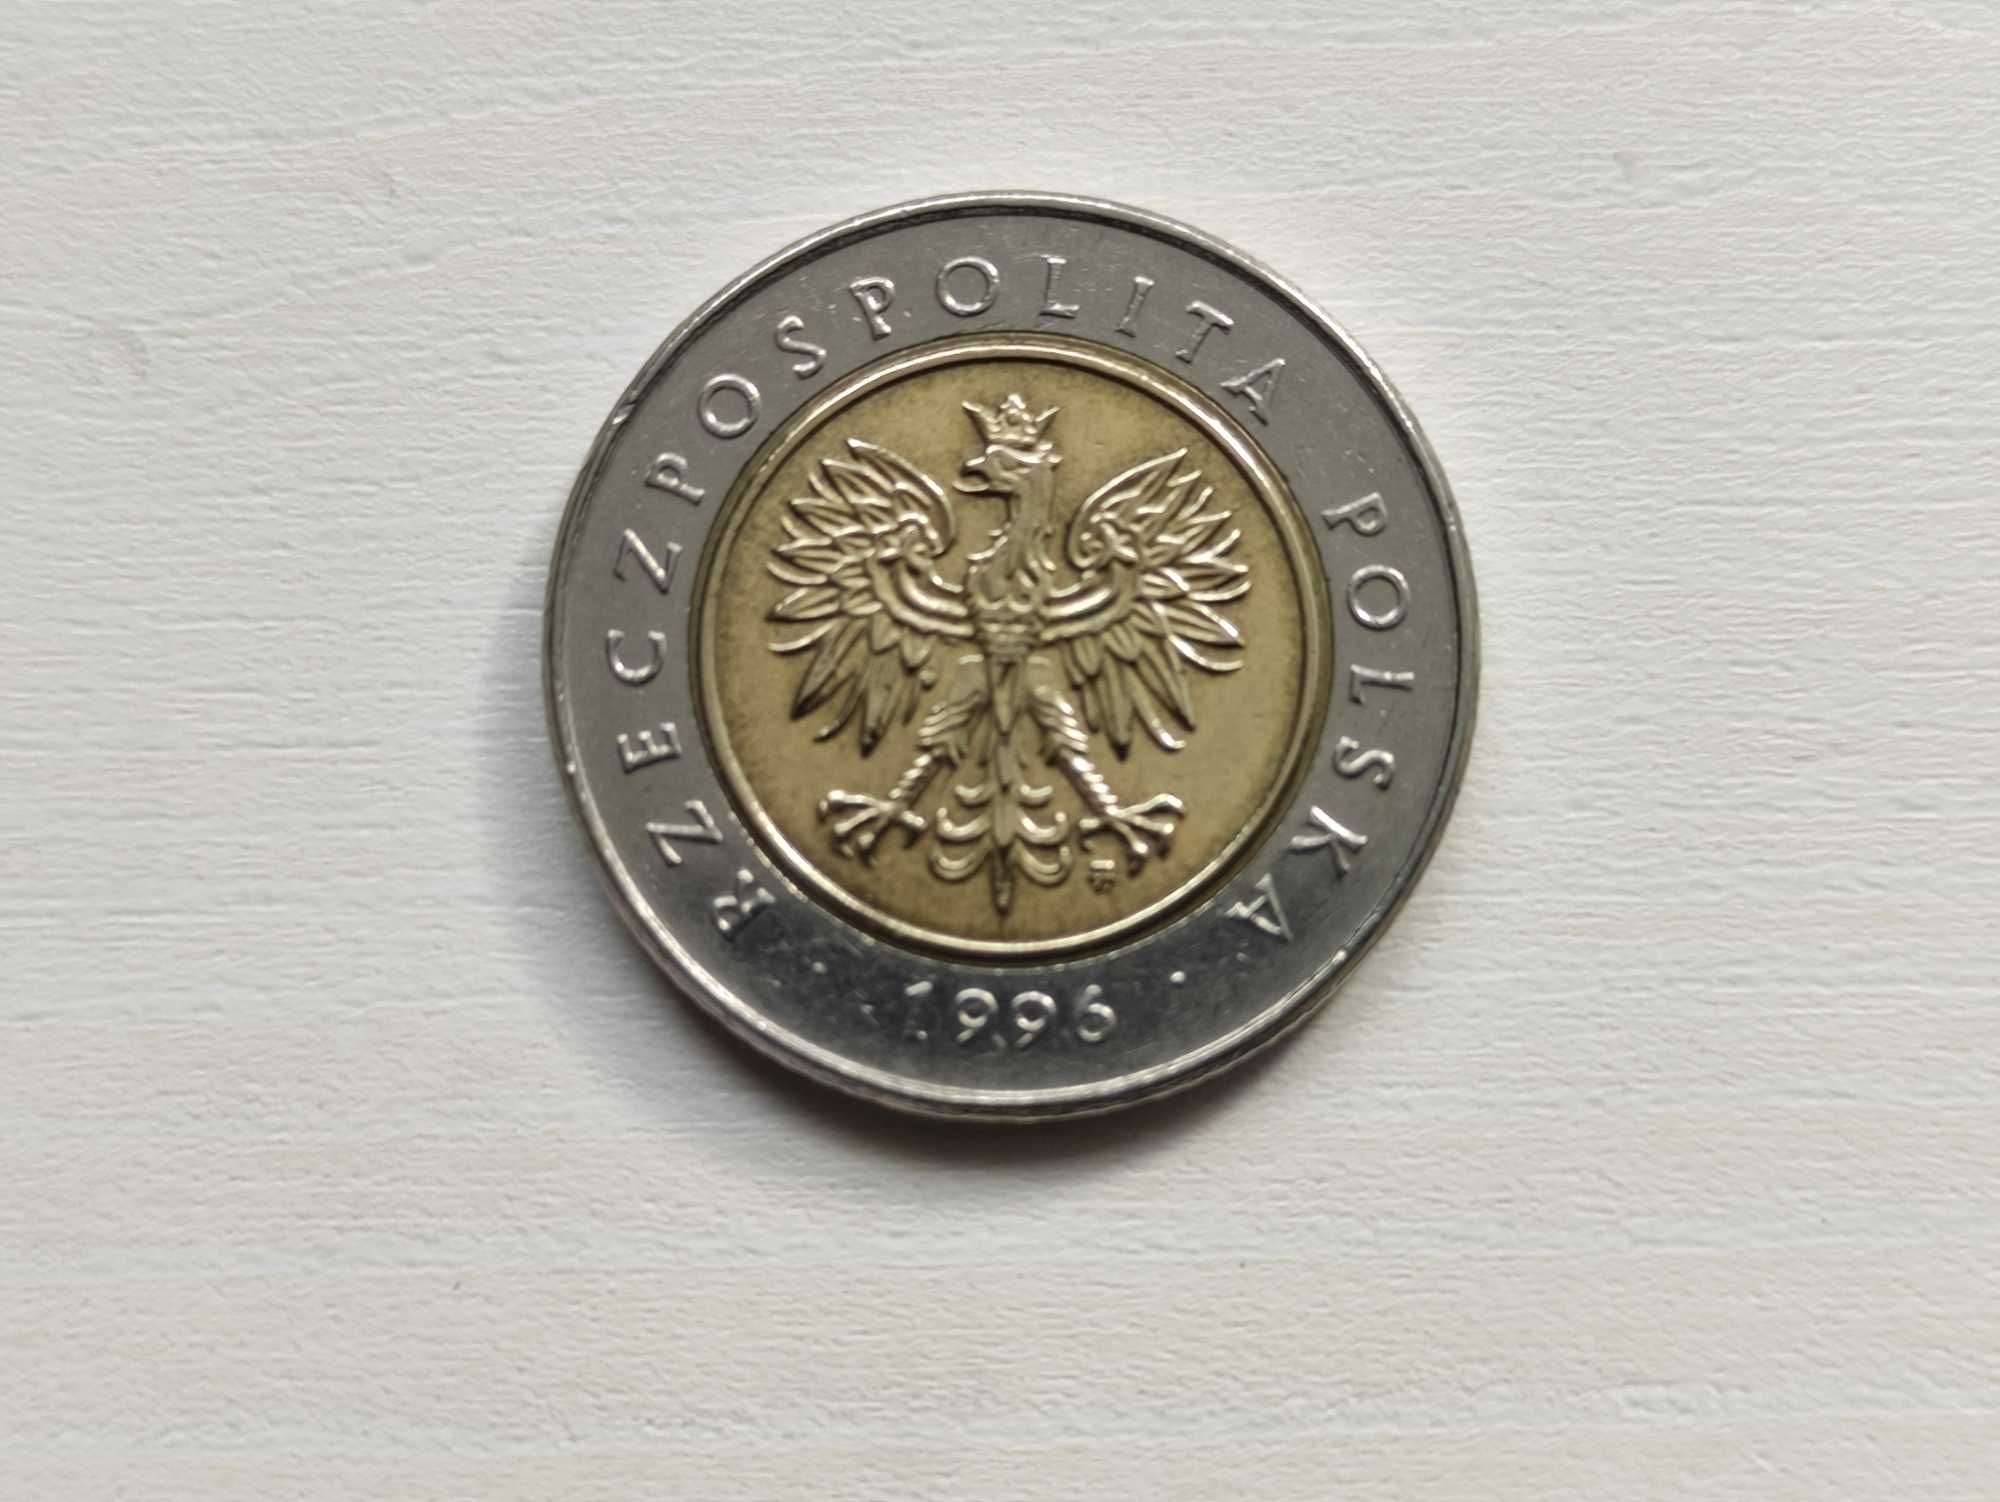 5 złoty 1996 rok